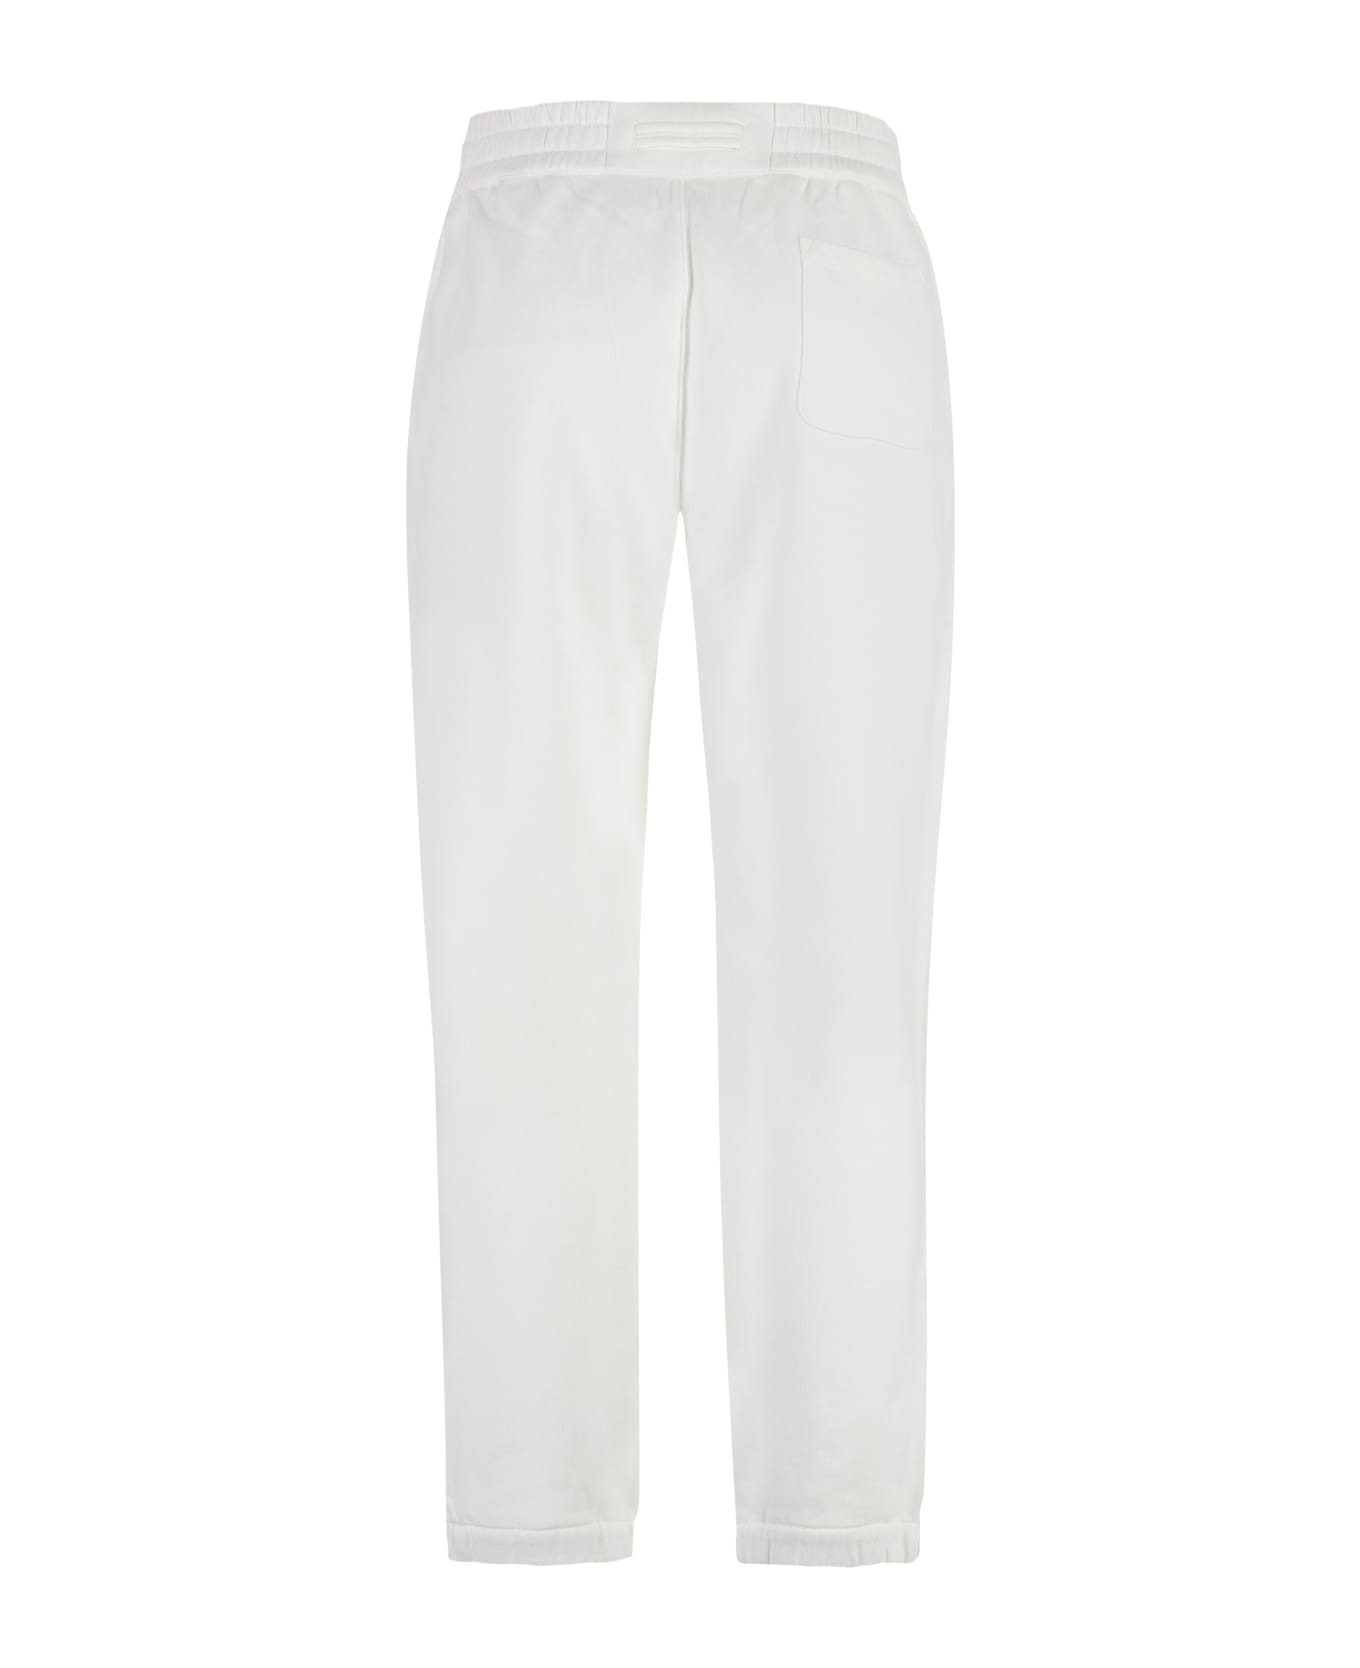 Zegna Cotton Track-pants - White